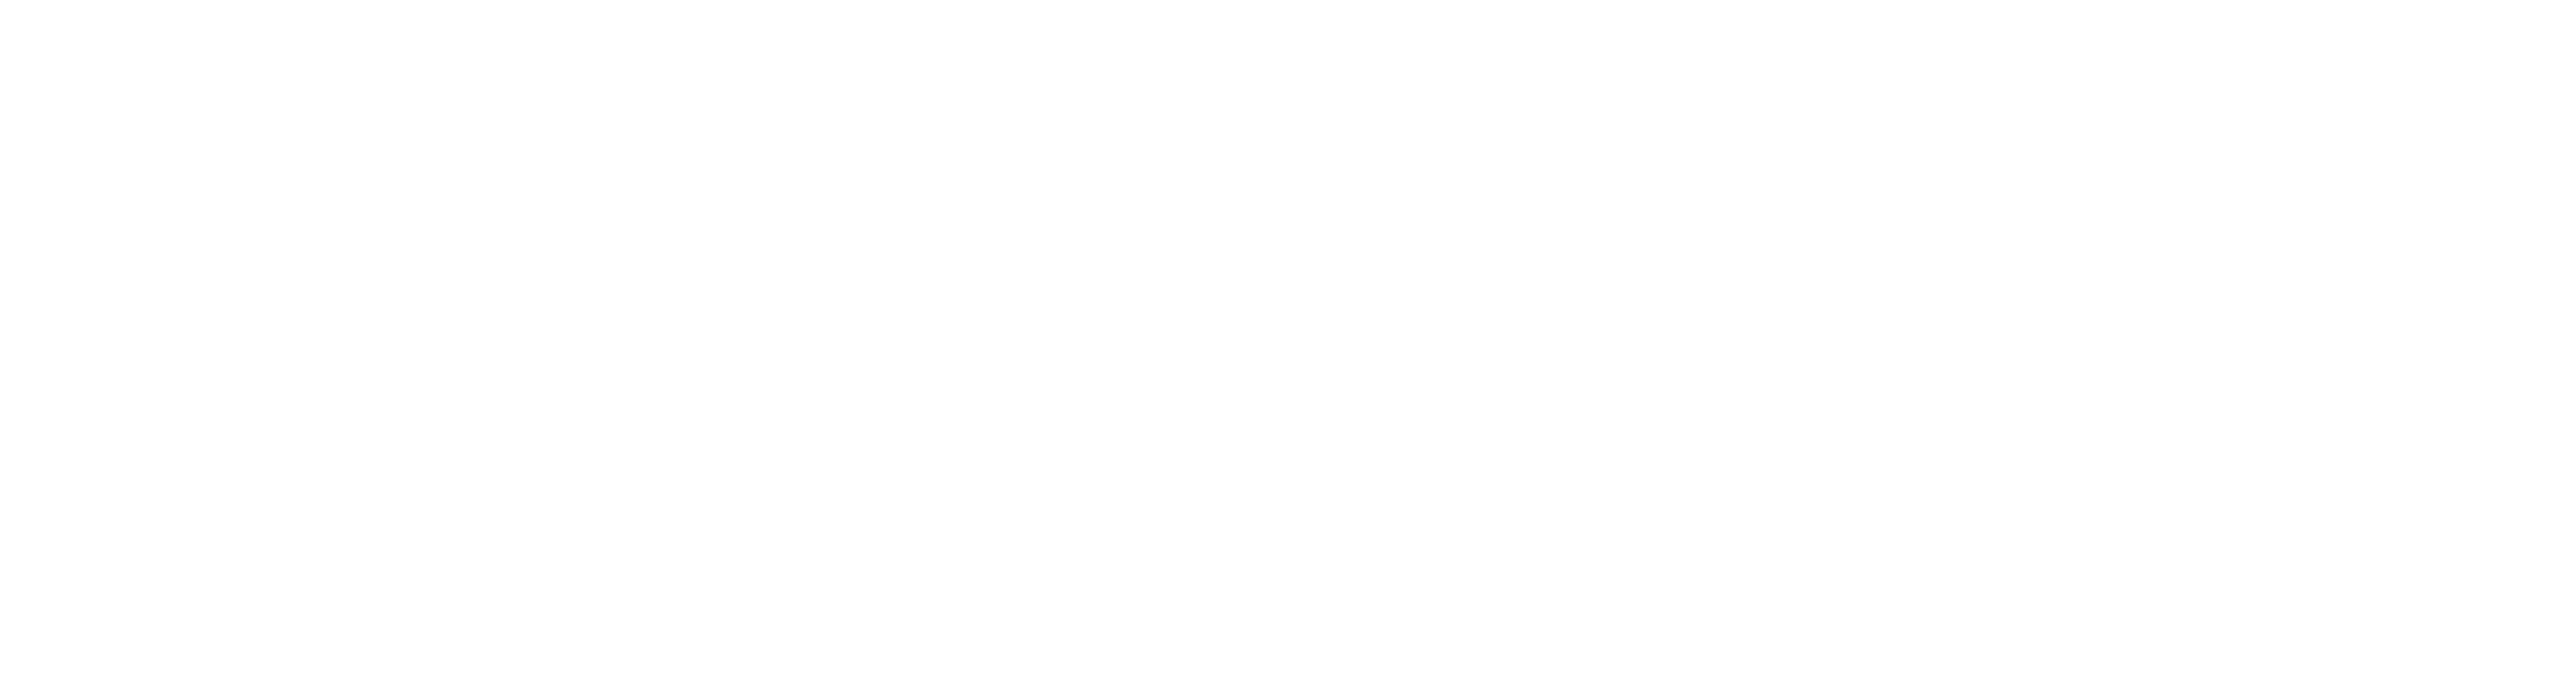 AniCura Deventer logo